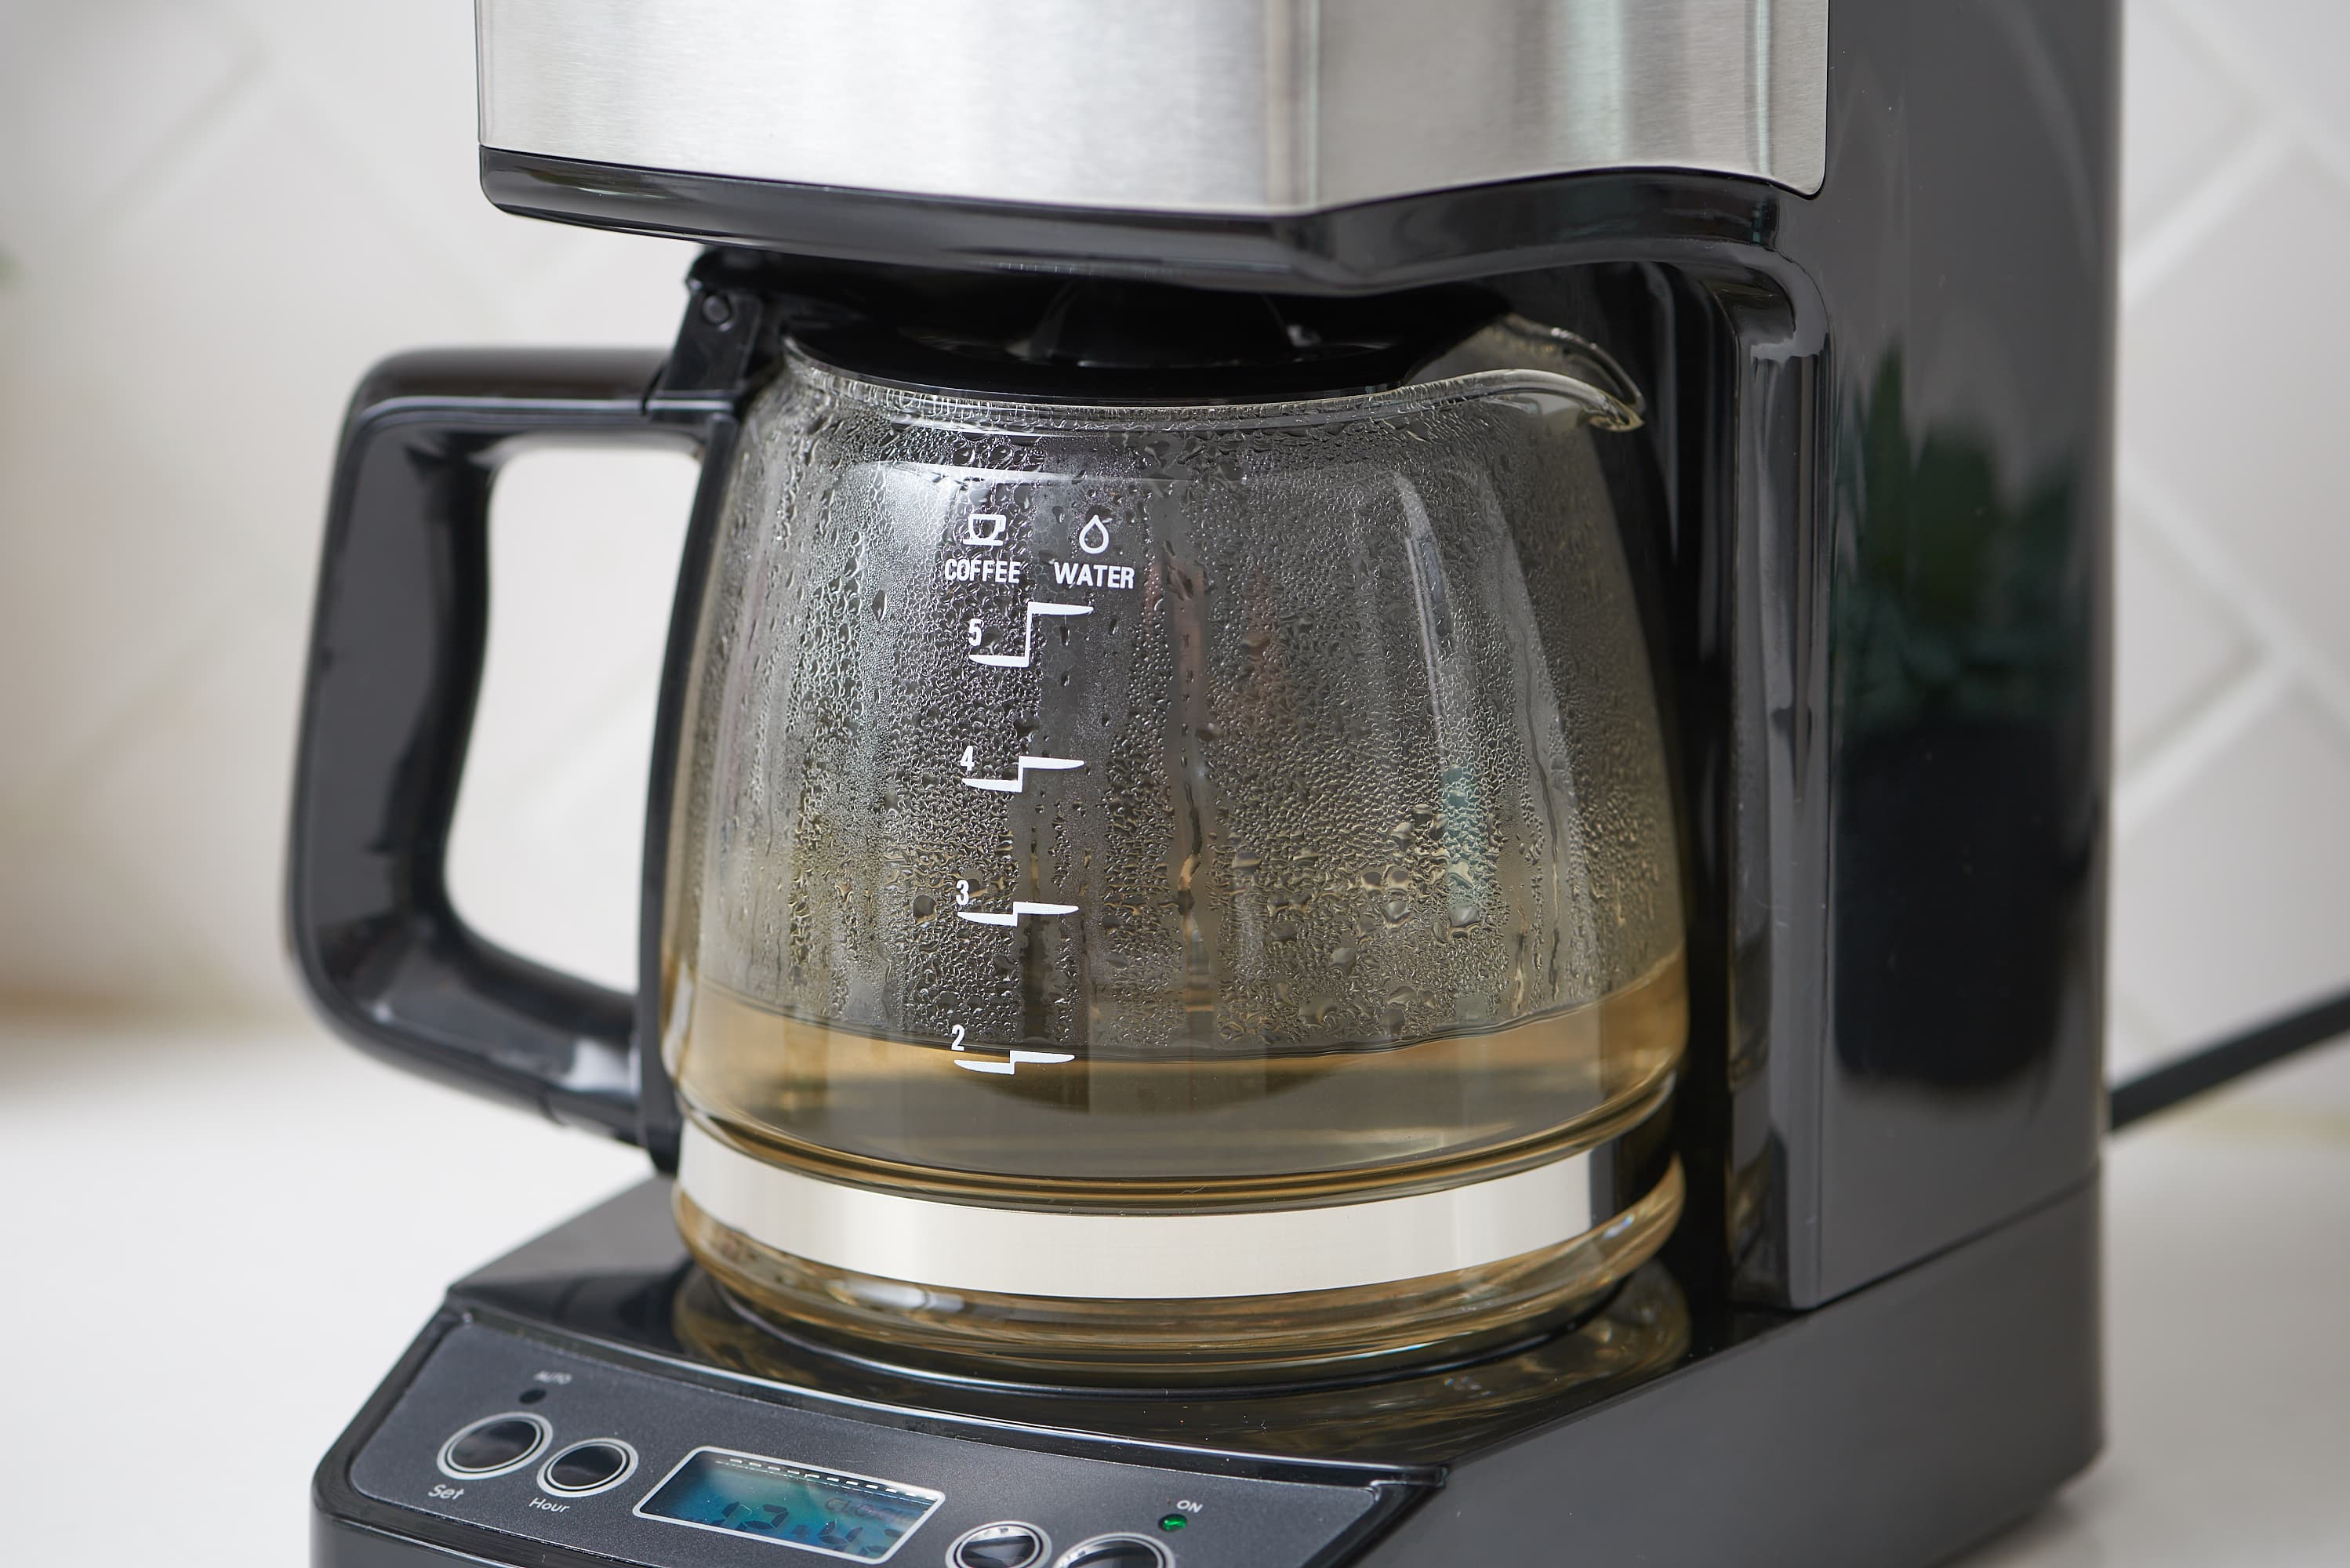 How do you descale a coffee maker?